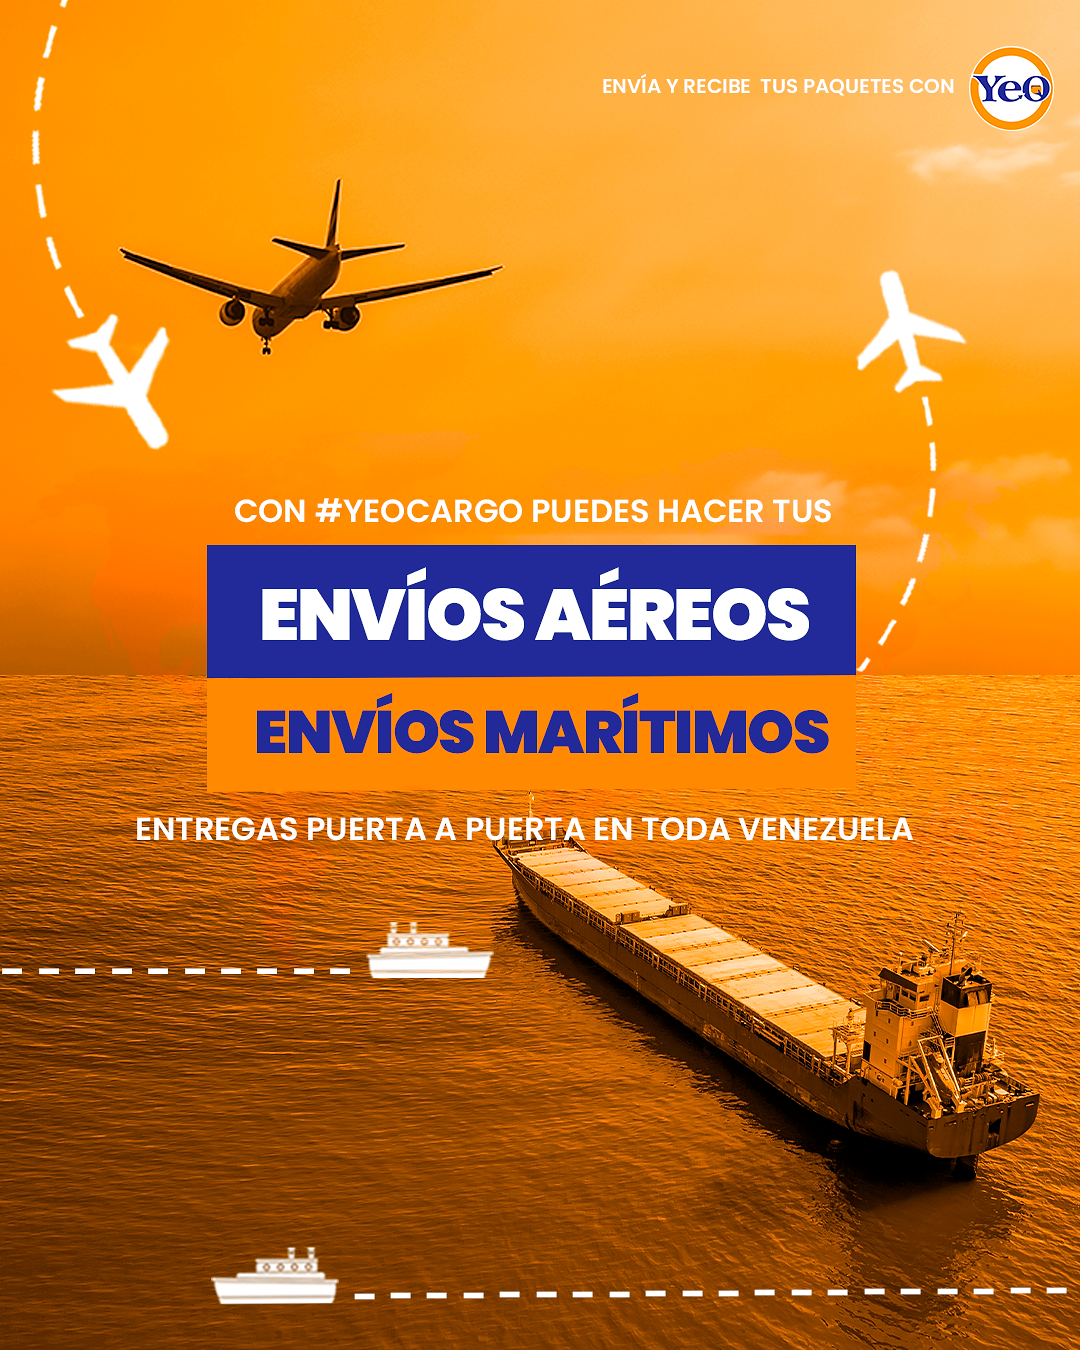 Envios aereos y maritimos a Puerta a Puerta a Venezuela